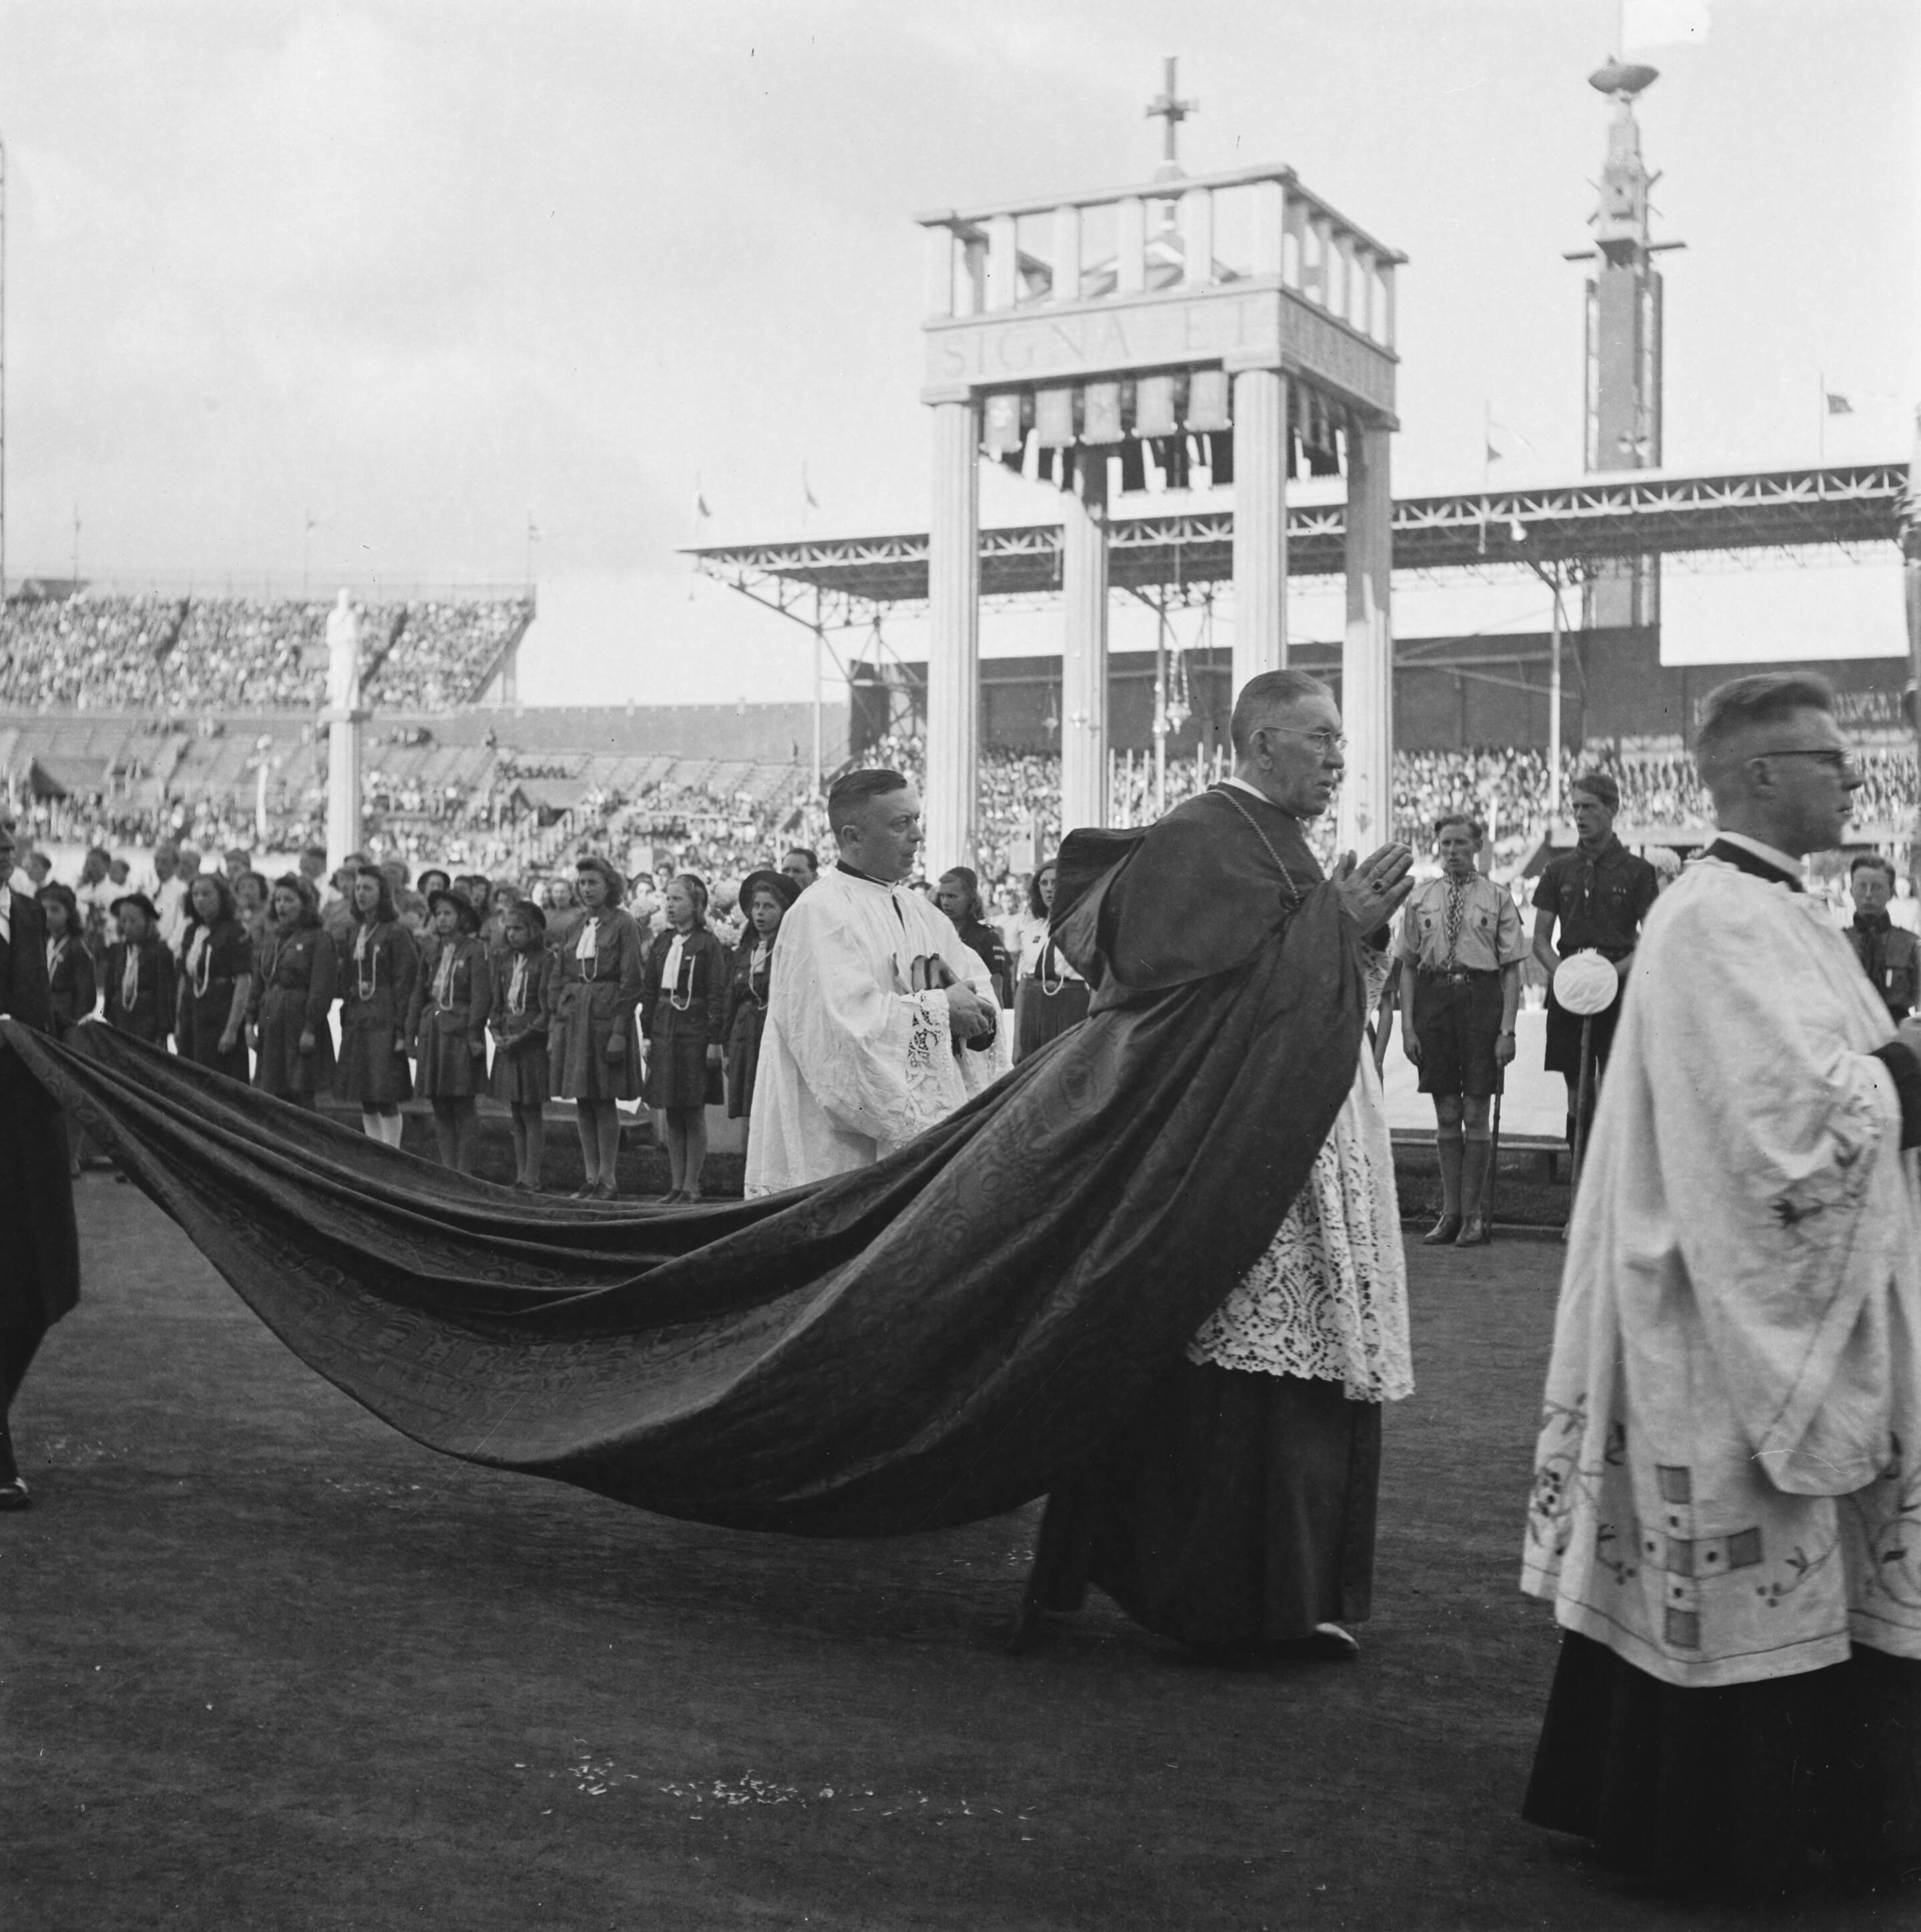 1946 - Pontificale mis in het Olympisch Stadion t.g.v. viering 6 eeuwen Katholiek Amsterdam [Het Mirakel van Amsterdam]